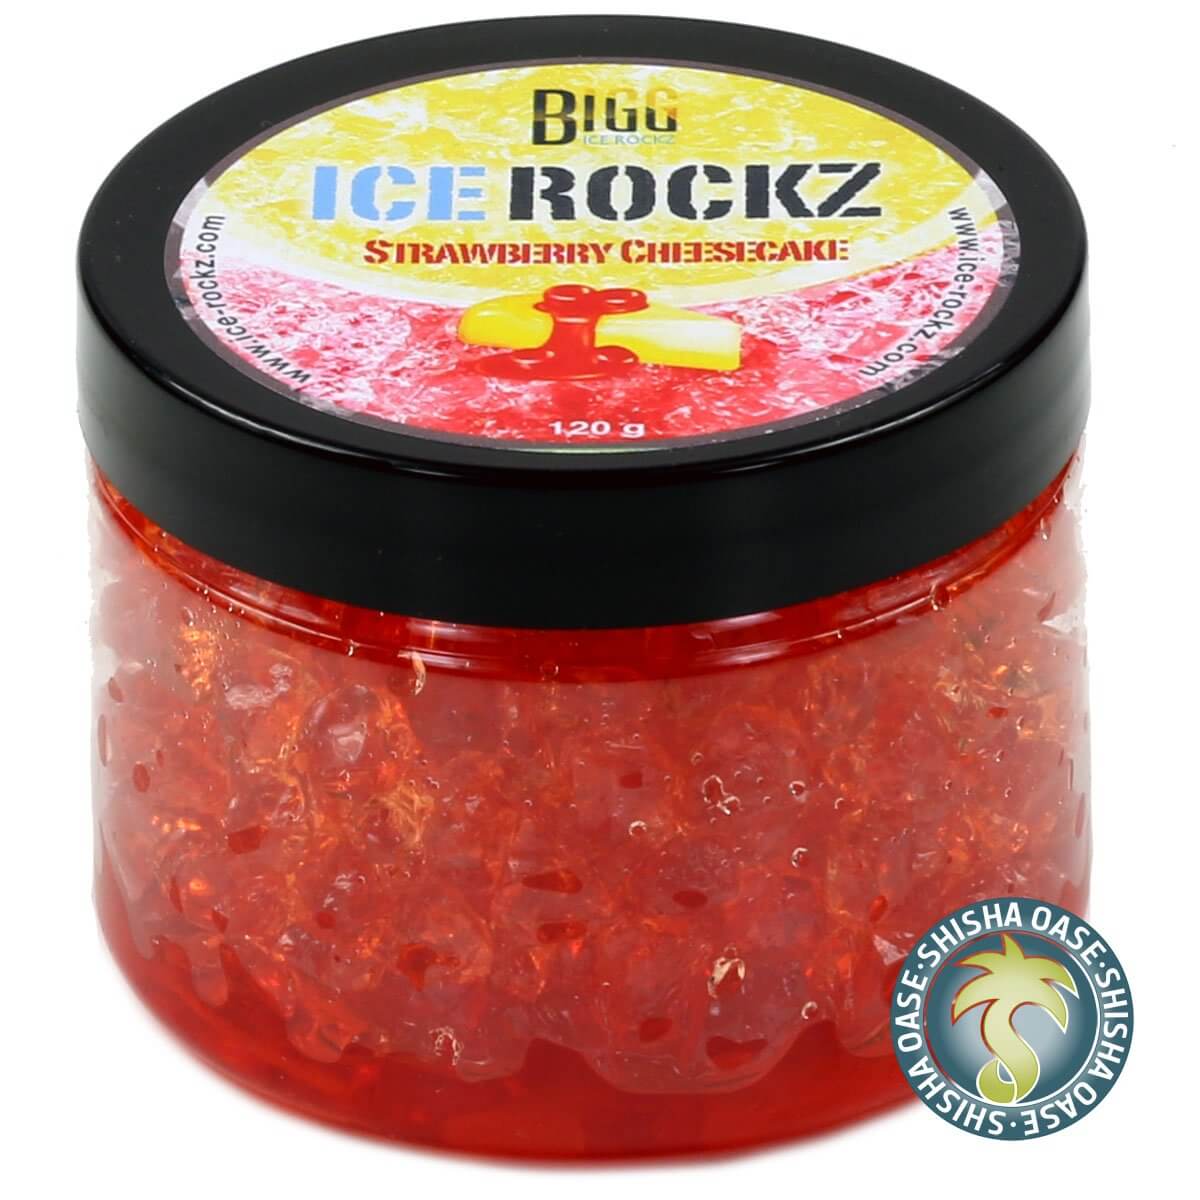 Bigg Ice Rockz - Strawberry Cheesecake 120g